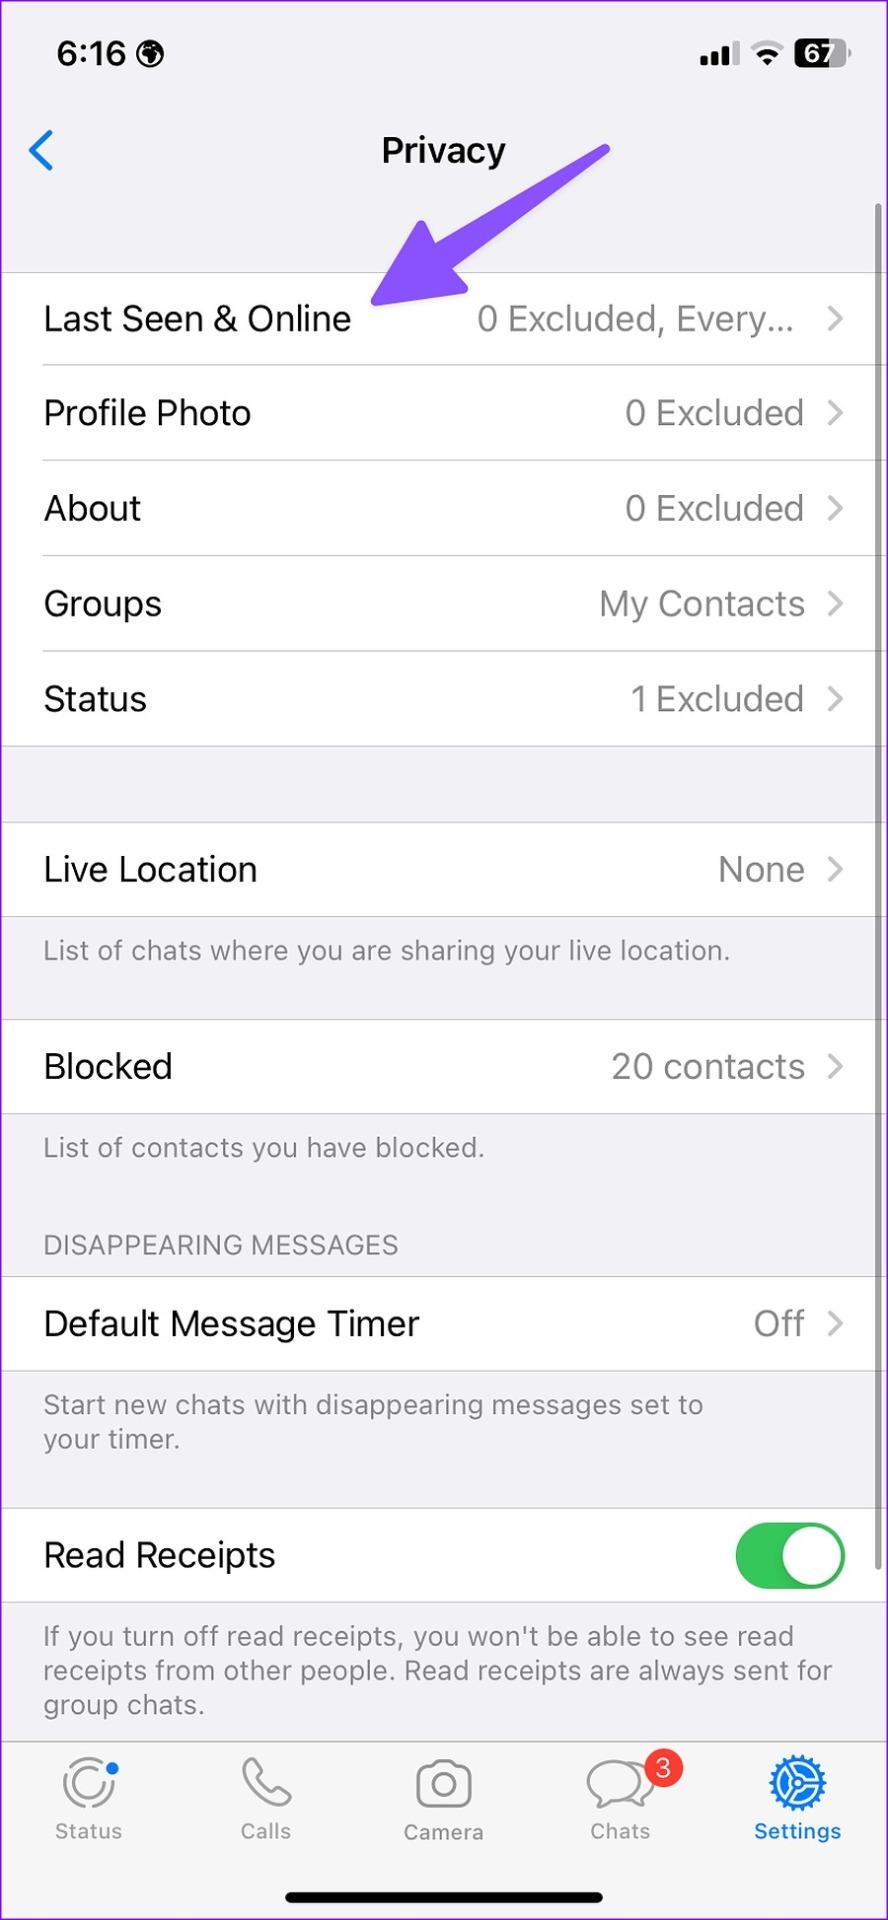 كيفية إخفاء آخر ظهور وحالة الاتصال بالإنترنت في WhatsApp على الهاتف المحمول وسطح المكتب